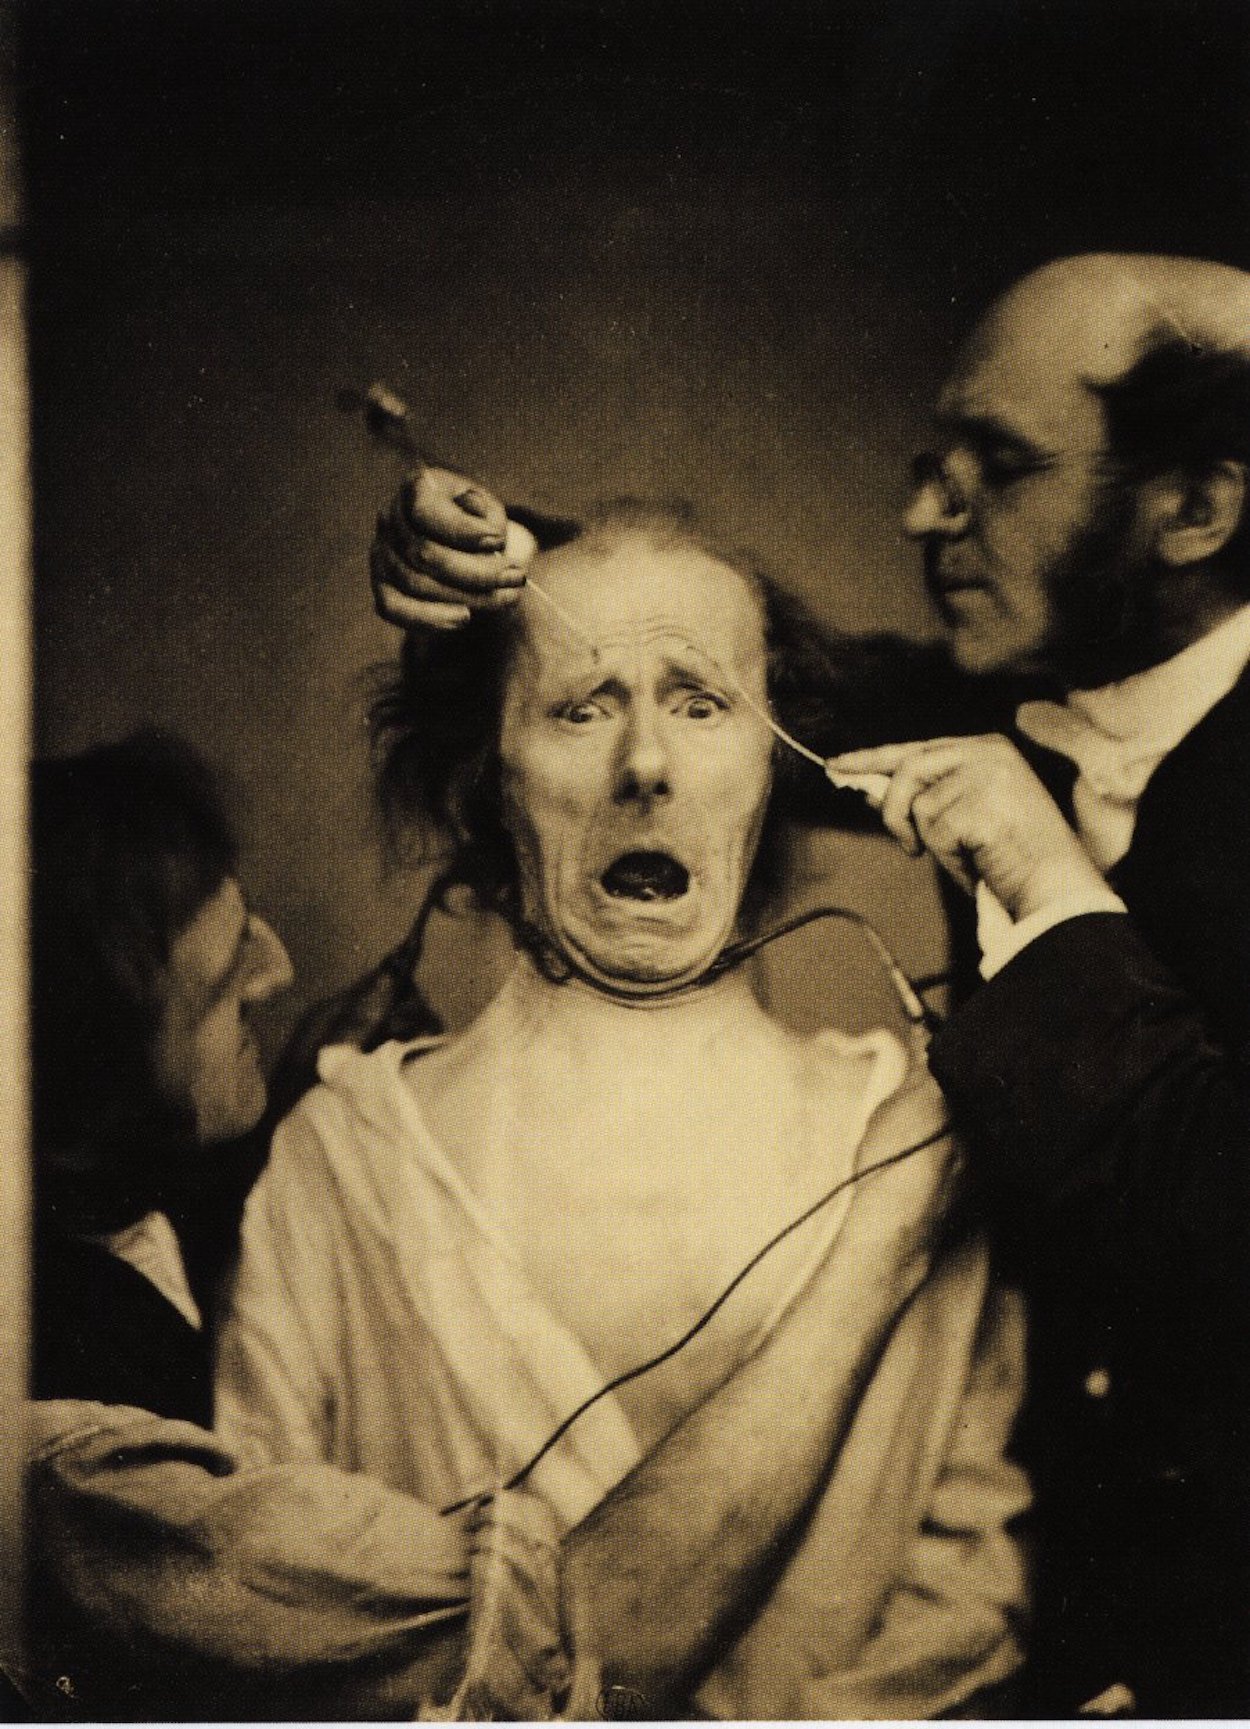 Duchenne e o seu assistente criam uma expressão de medo através de eletroestimulação by Paul Nadar - c. 1862 